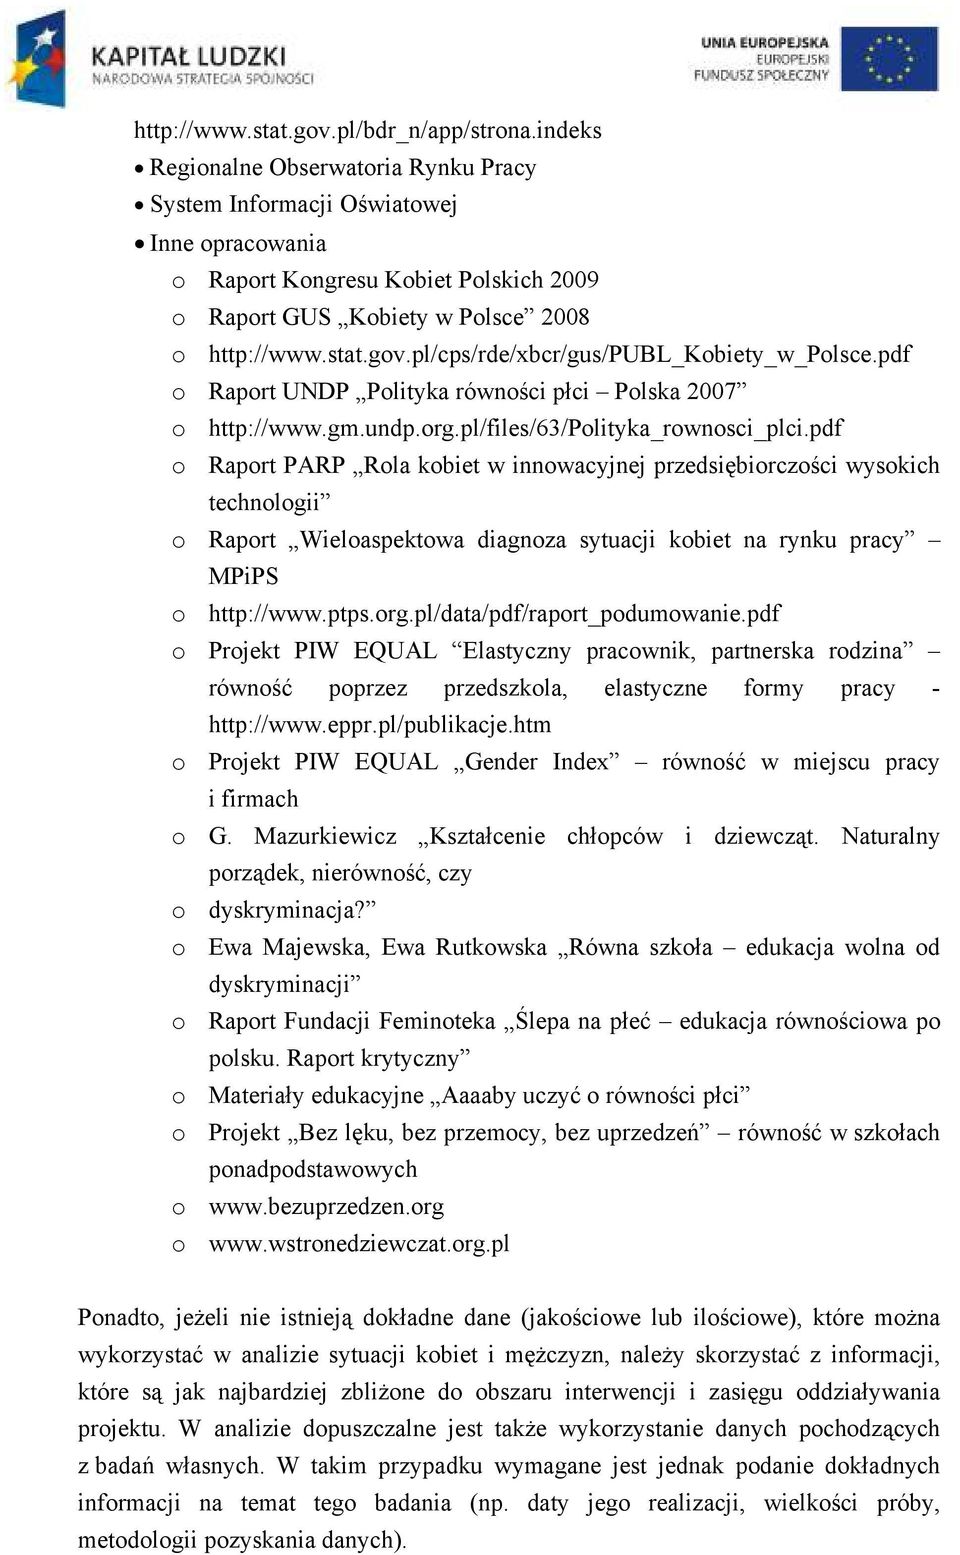 pl/cps/rde/xbcr/gus/publ_kobiety_w_polsce.pdf o Raport UNDP Polityka równości płci Polska 2007 o http://www.gm.undp.org.pl/files/63/polityka_rownosci_plci.